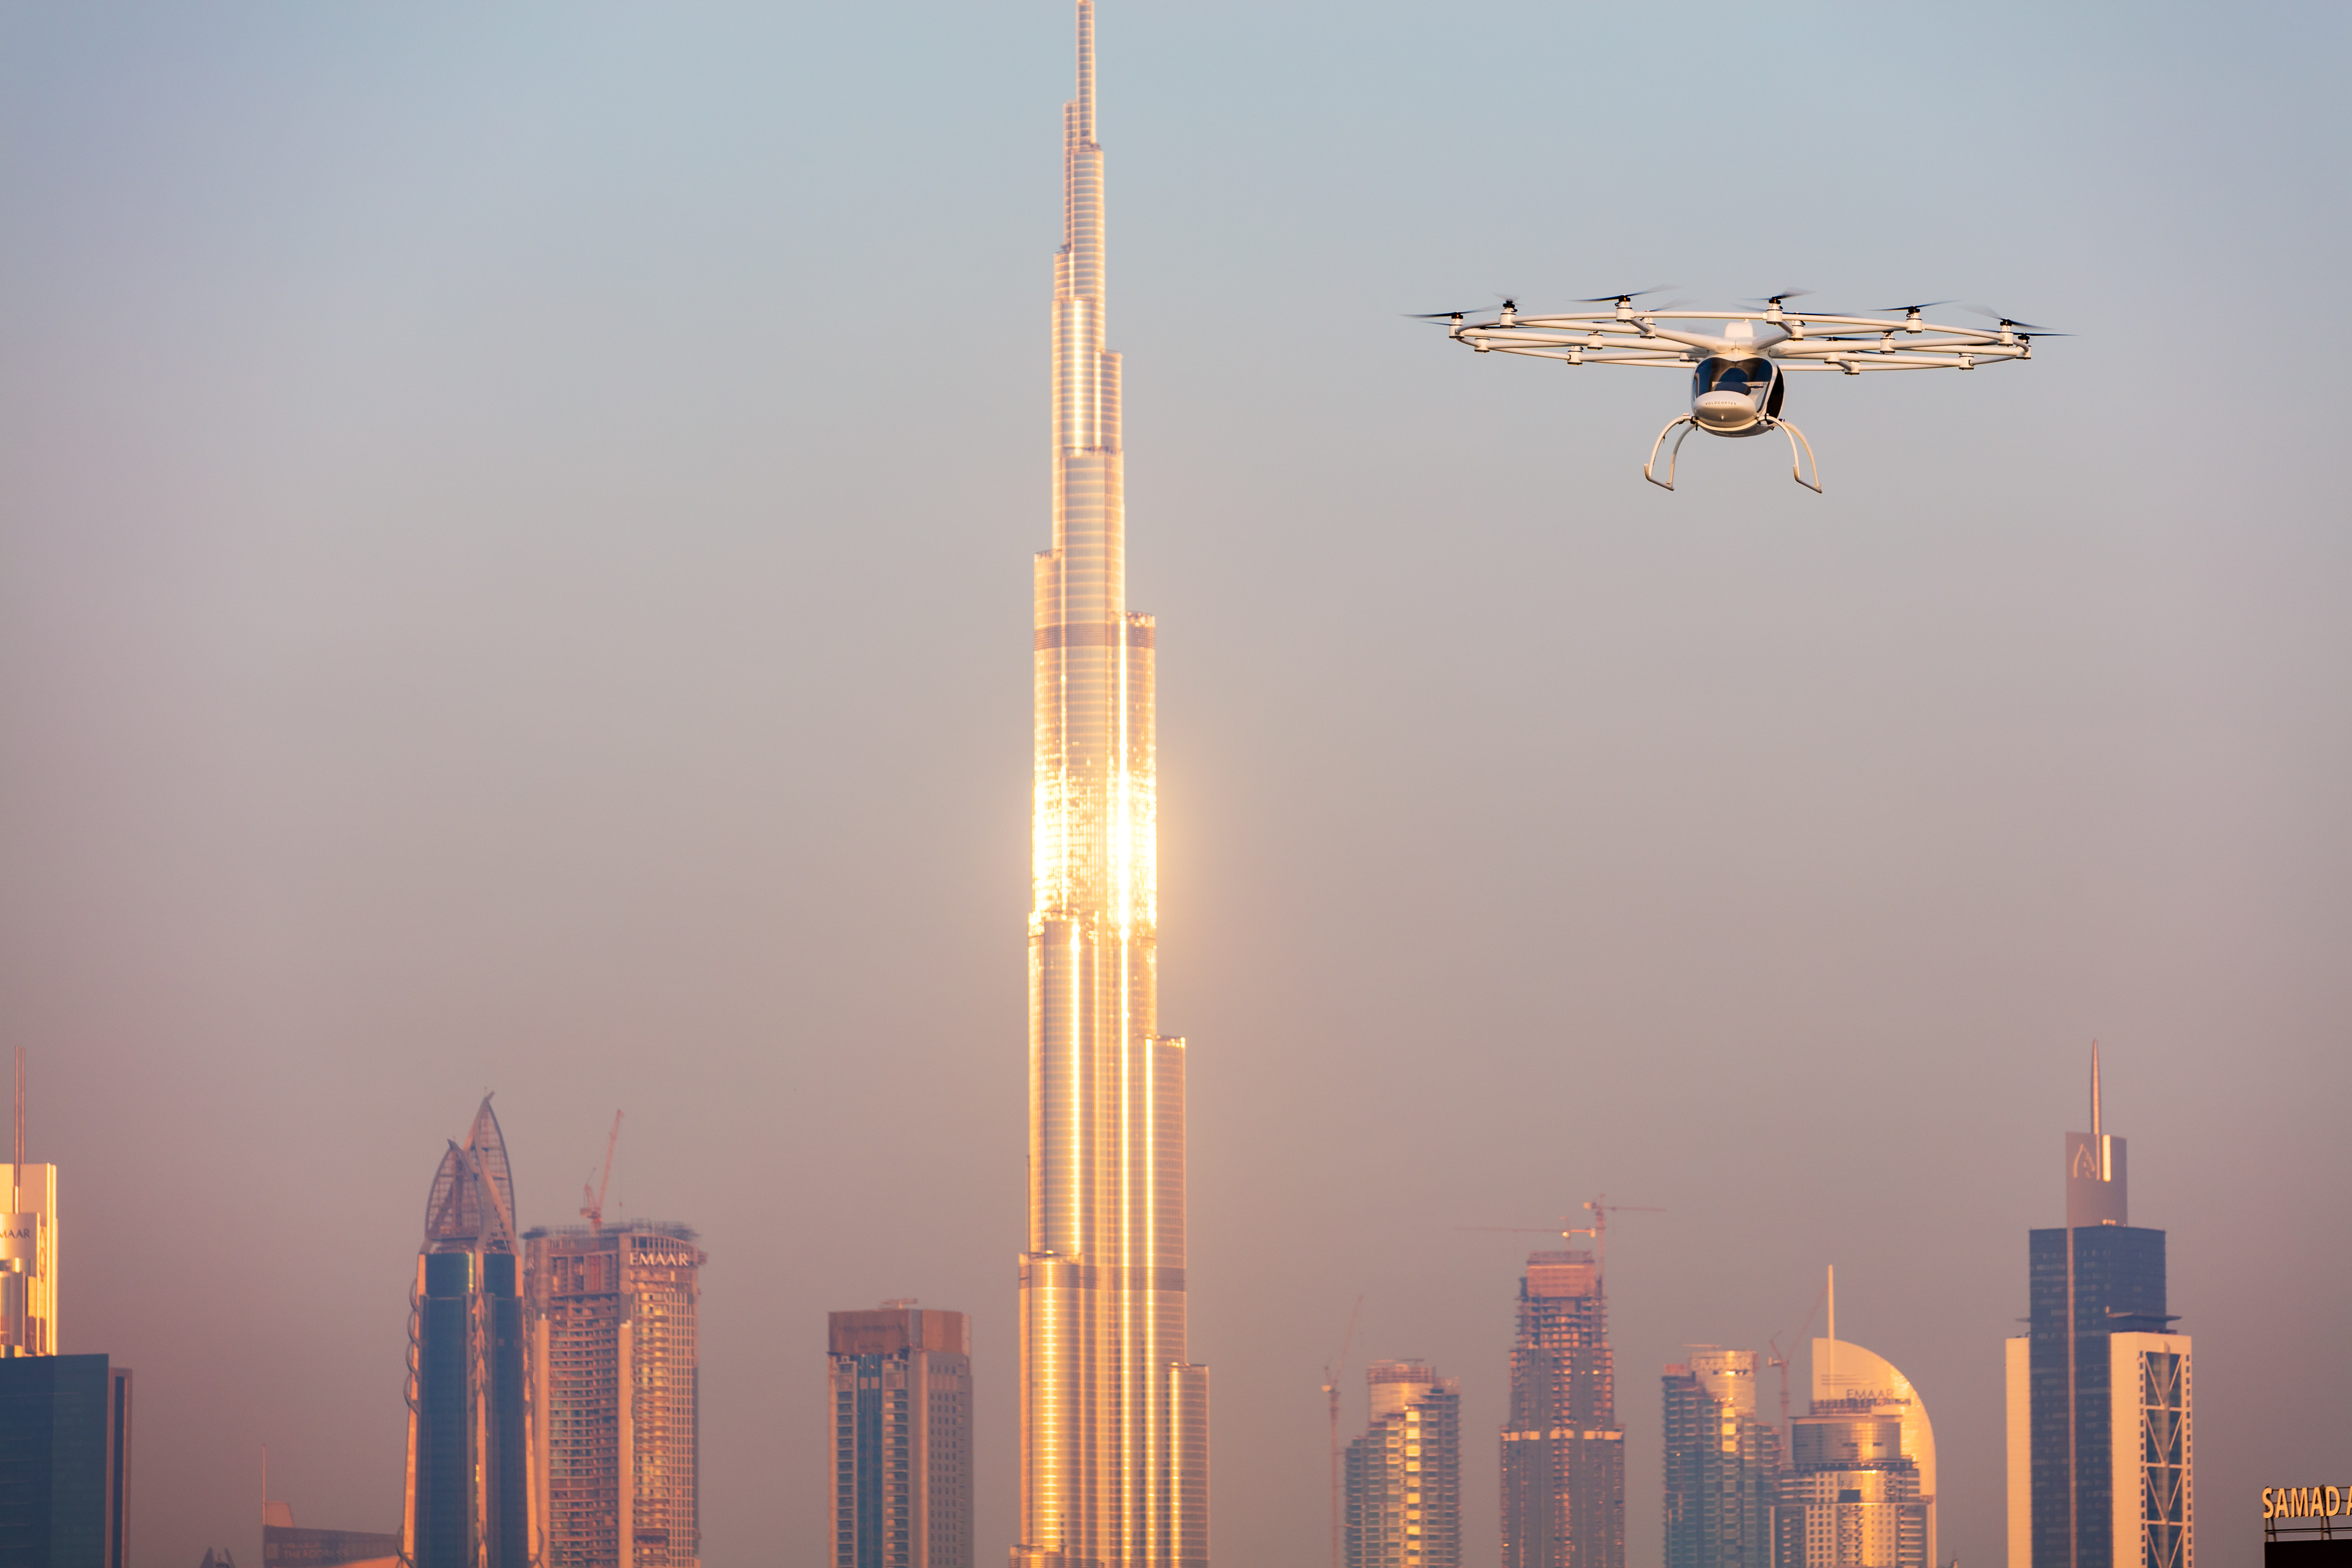 Volocopter poblíž Burdž Chalífa, nebo-li „Chalífovy věže“. Pro návštěvníky Dubaje, kterých už je téměř patnáct milionů ročně, je nejvyšší mrakodrap světa se svými 828 metry, jedním z největších lákadel.